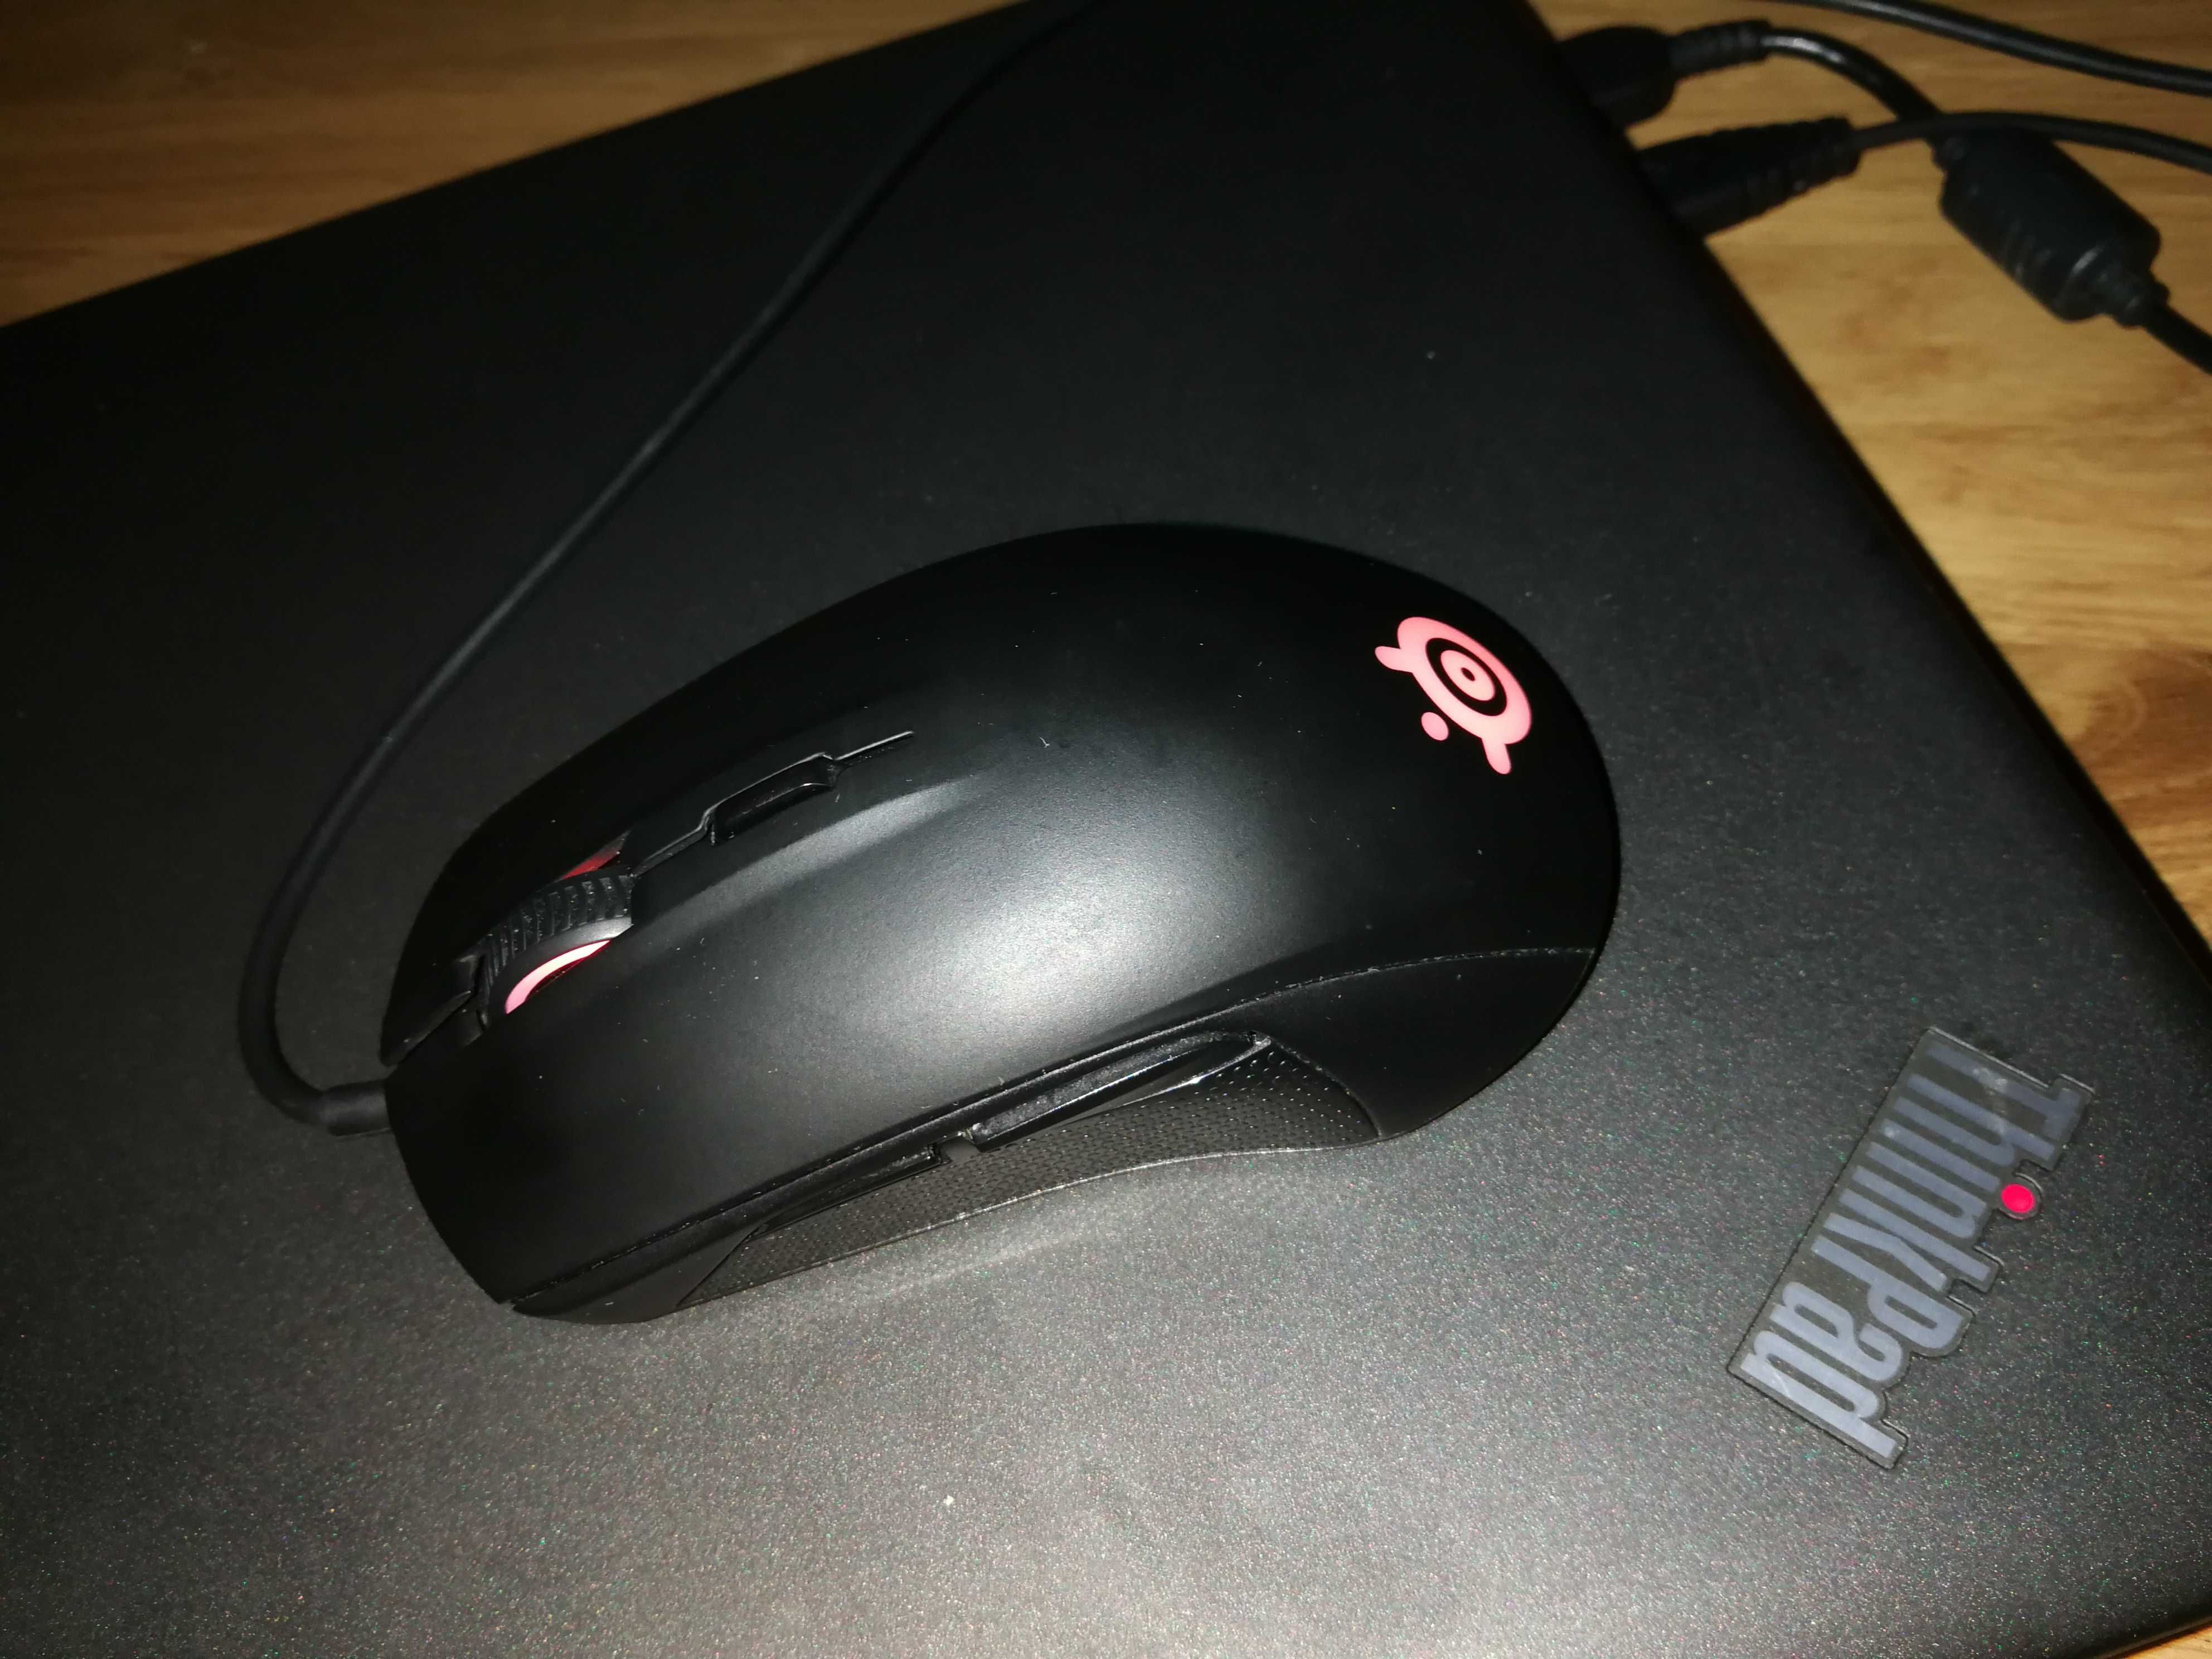 SteelSeries Rival gamingowa mysz dla graczy programowalna